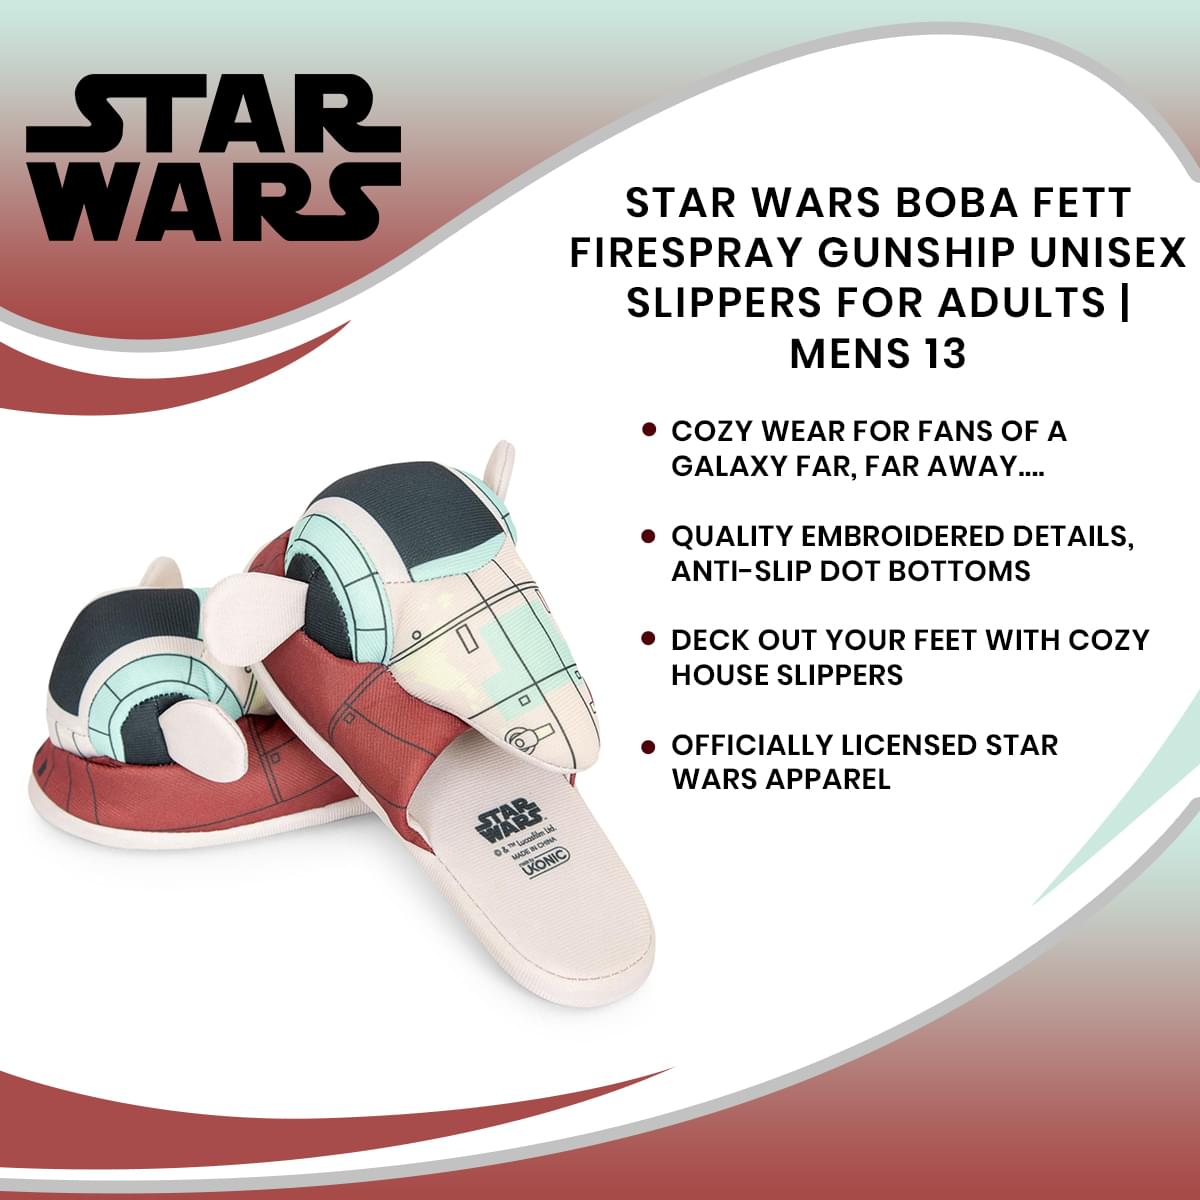 Star Wars Boba Fett Firespray Gunship Unisex Slippers for Adults